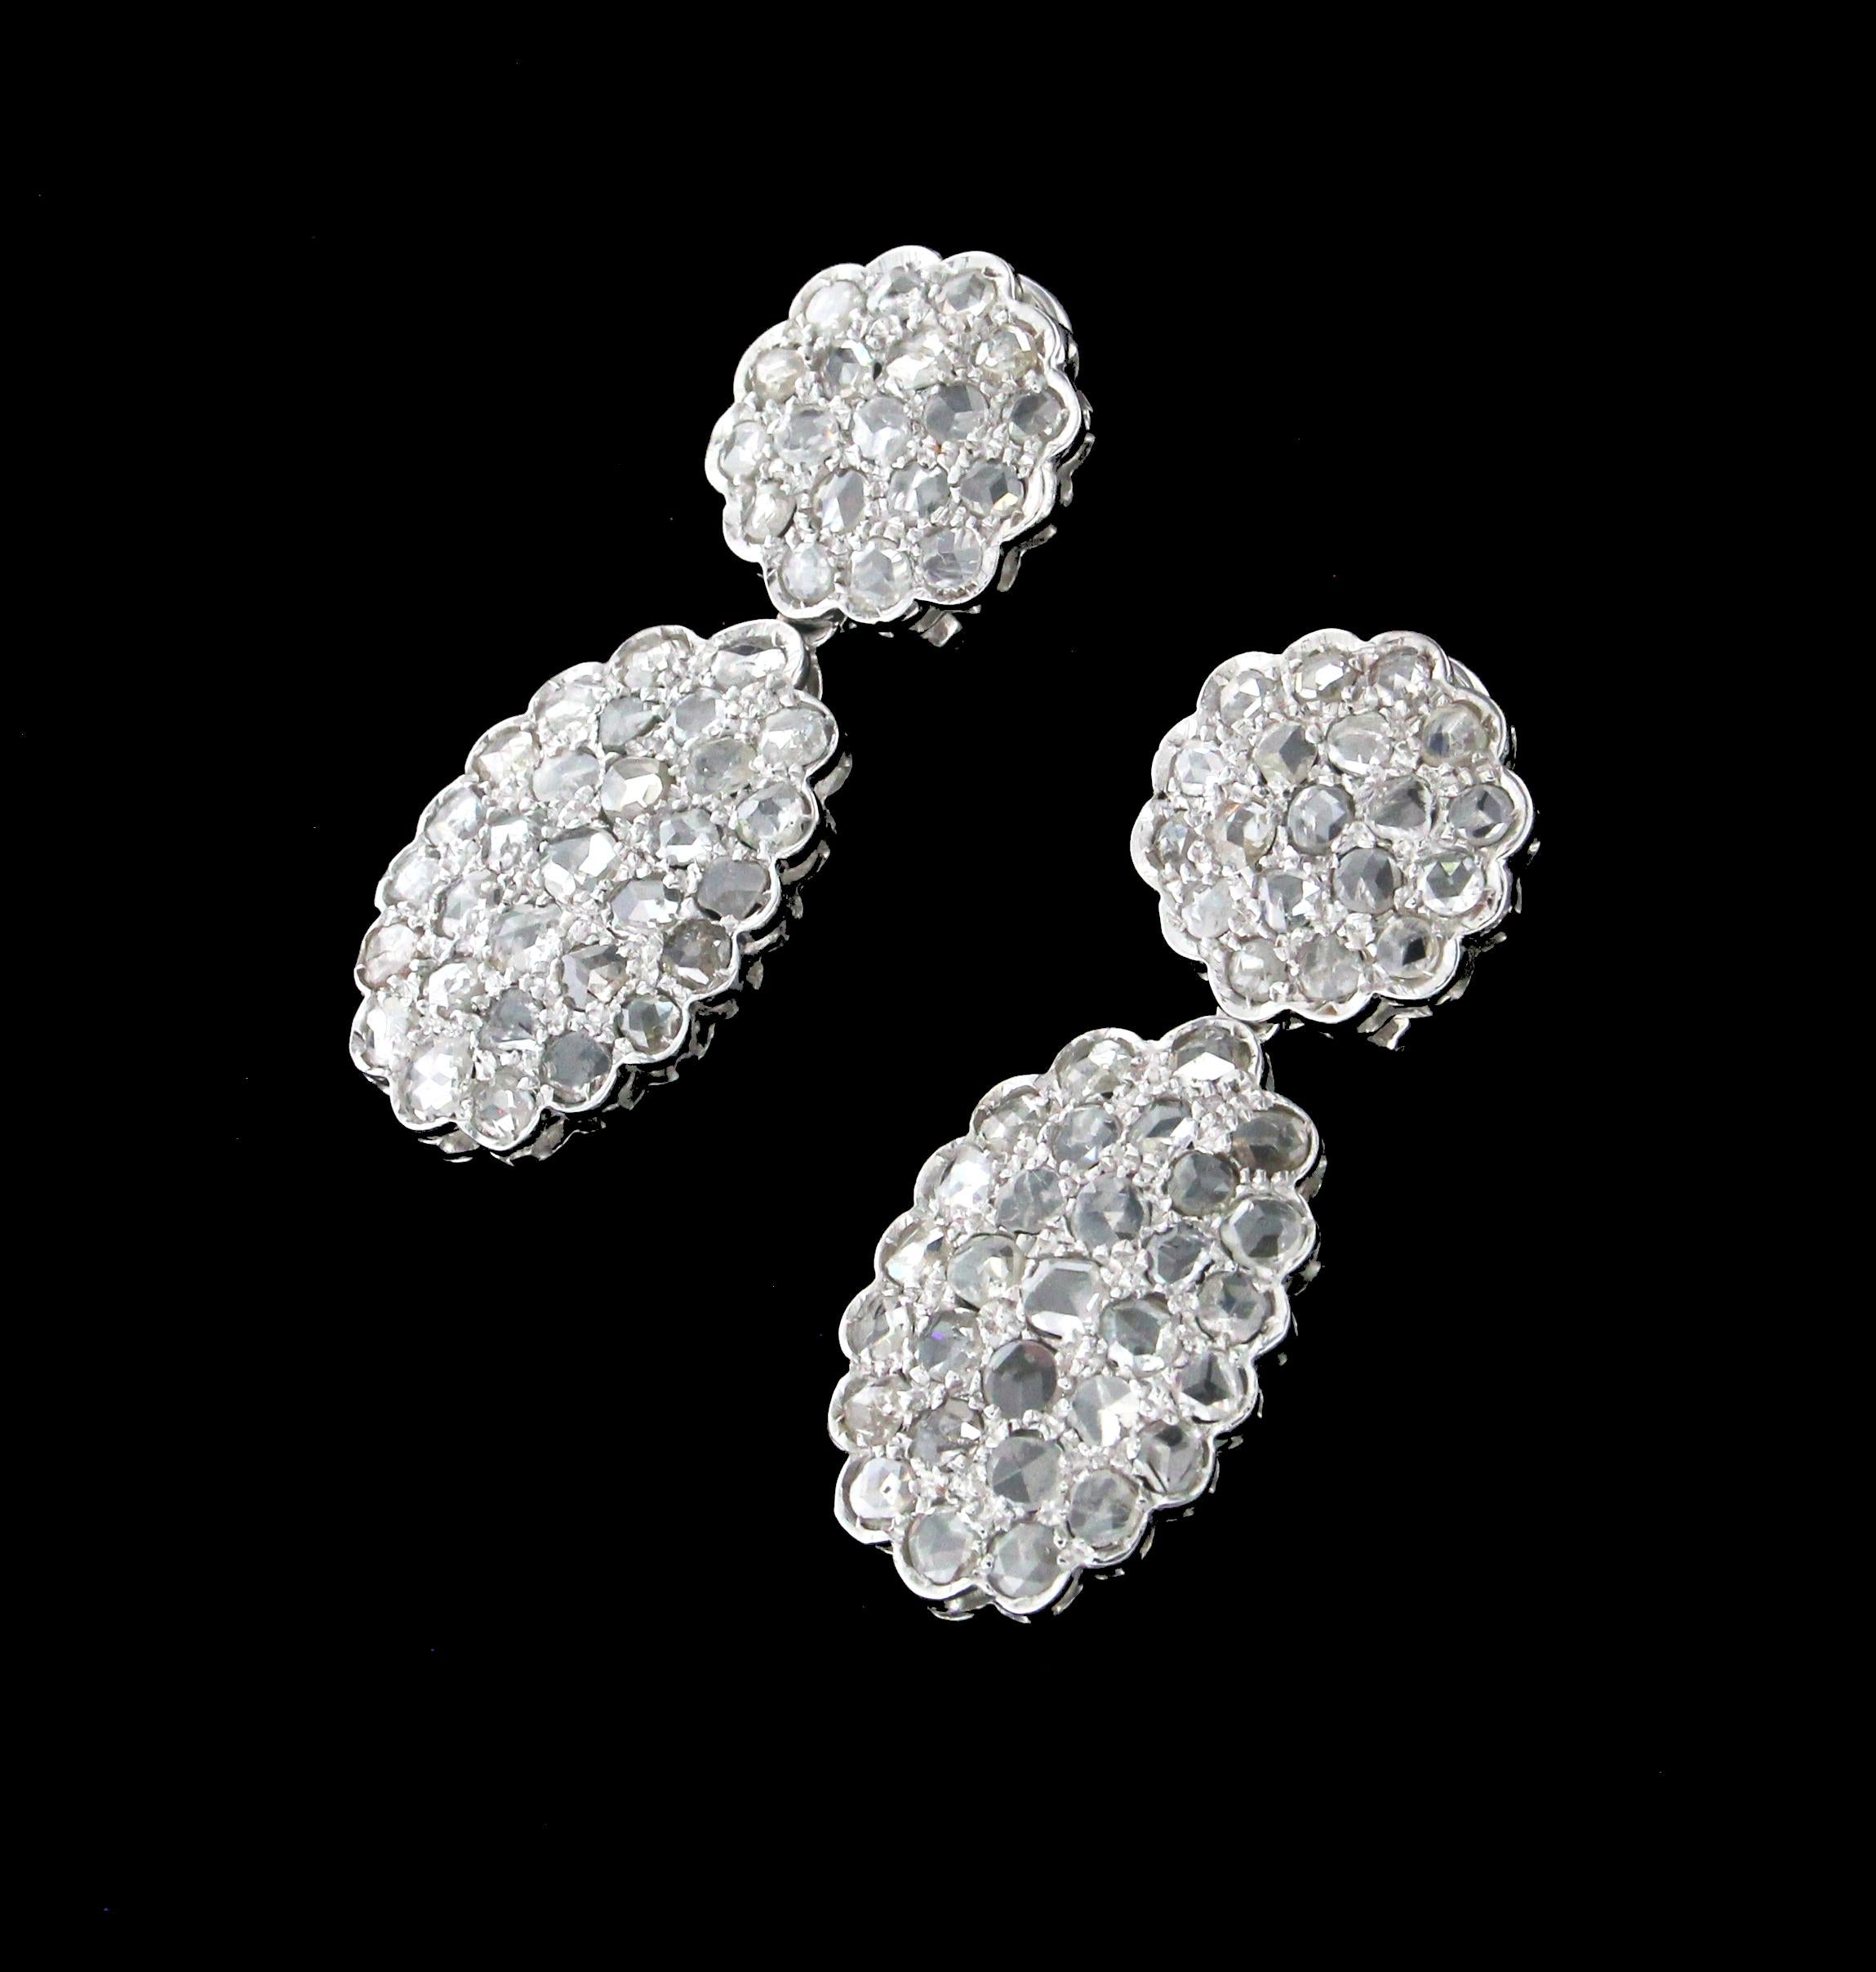 Rose Cut Handcraft Diamonds 14 Karat White Gold Drop Earrings For Sale